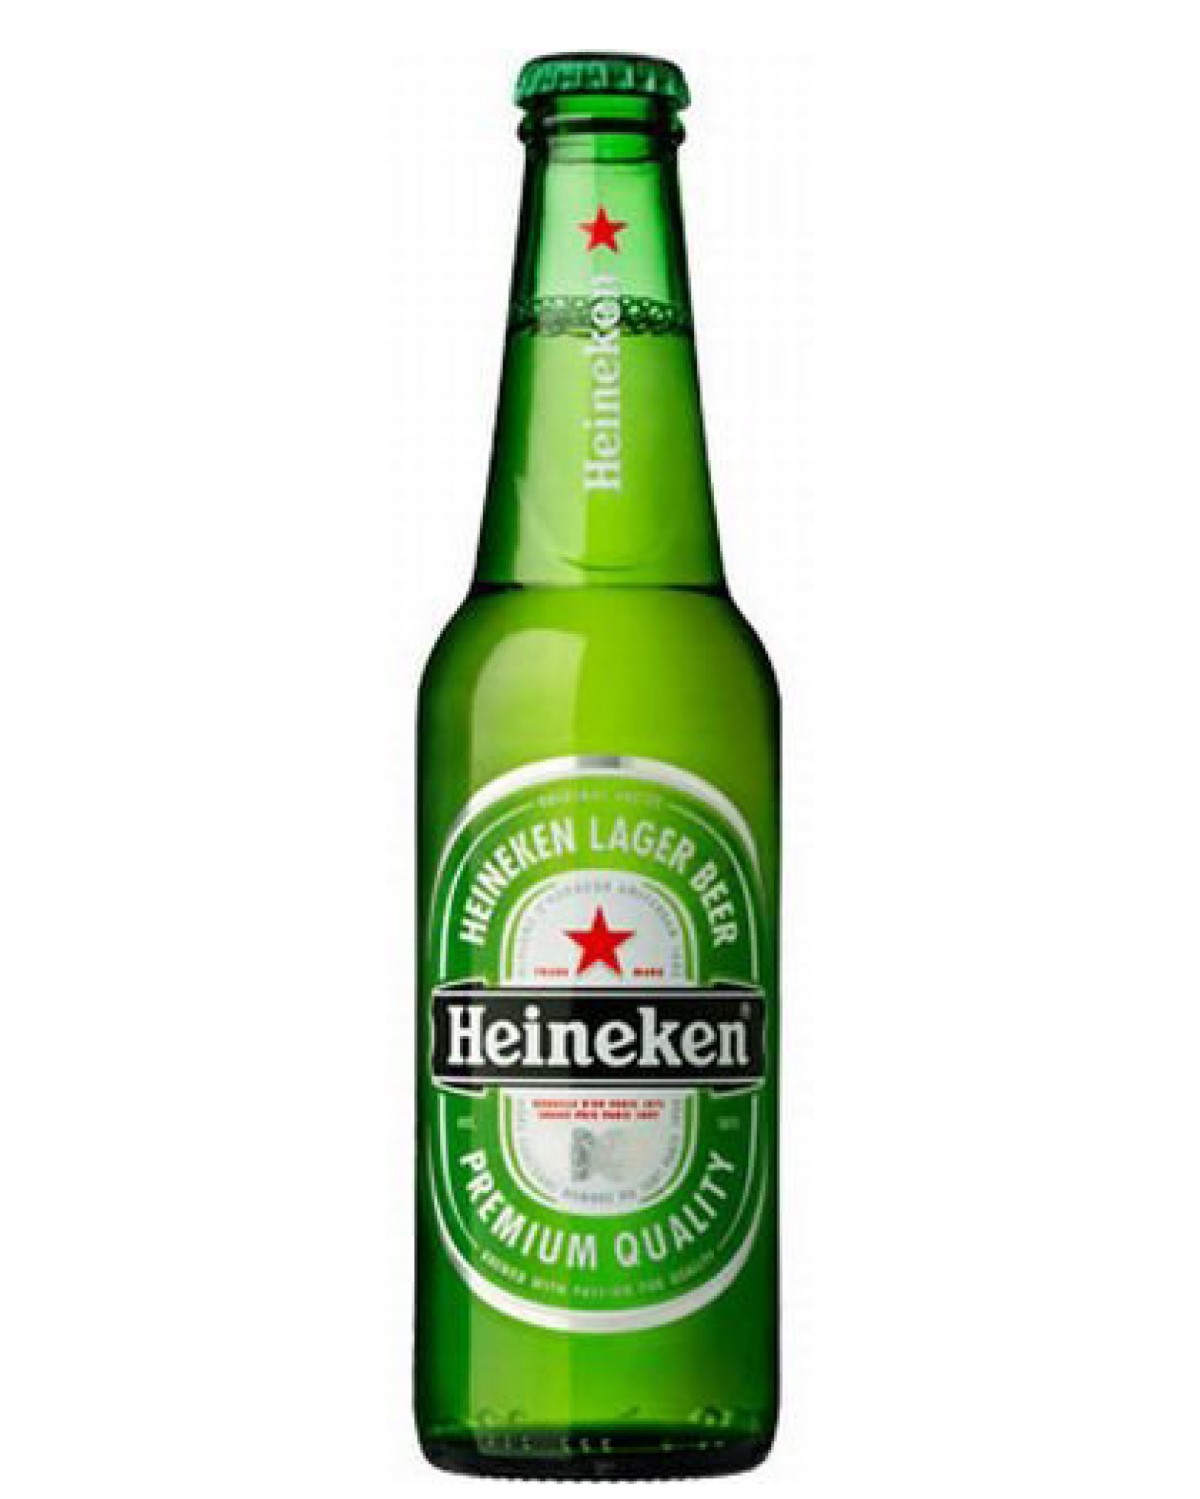 Heineken upset over sponsorship leak